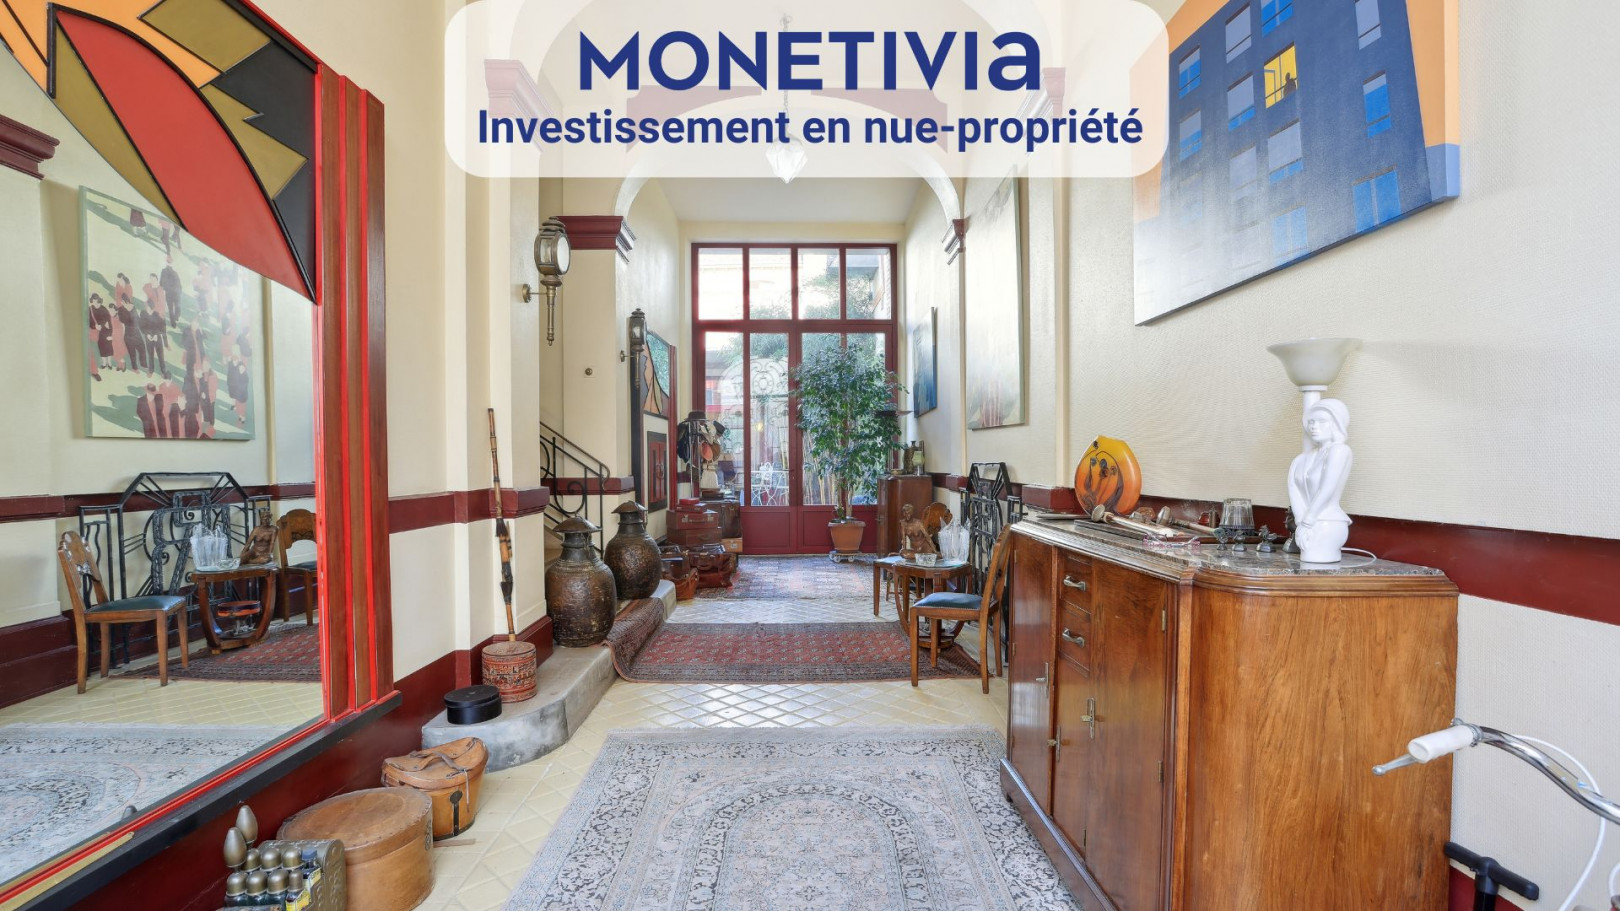 
                                                Vente
                                                 OPPORTUNITÉ D'INVESTISSEMENT EN NUE-PROPRIÉTÉ À MONTARGIS - ACHAT AVEC 44% DE DÉCOTE